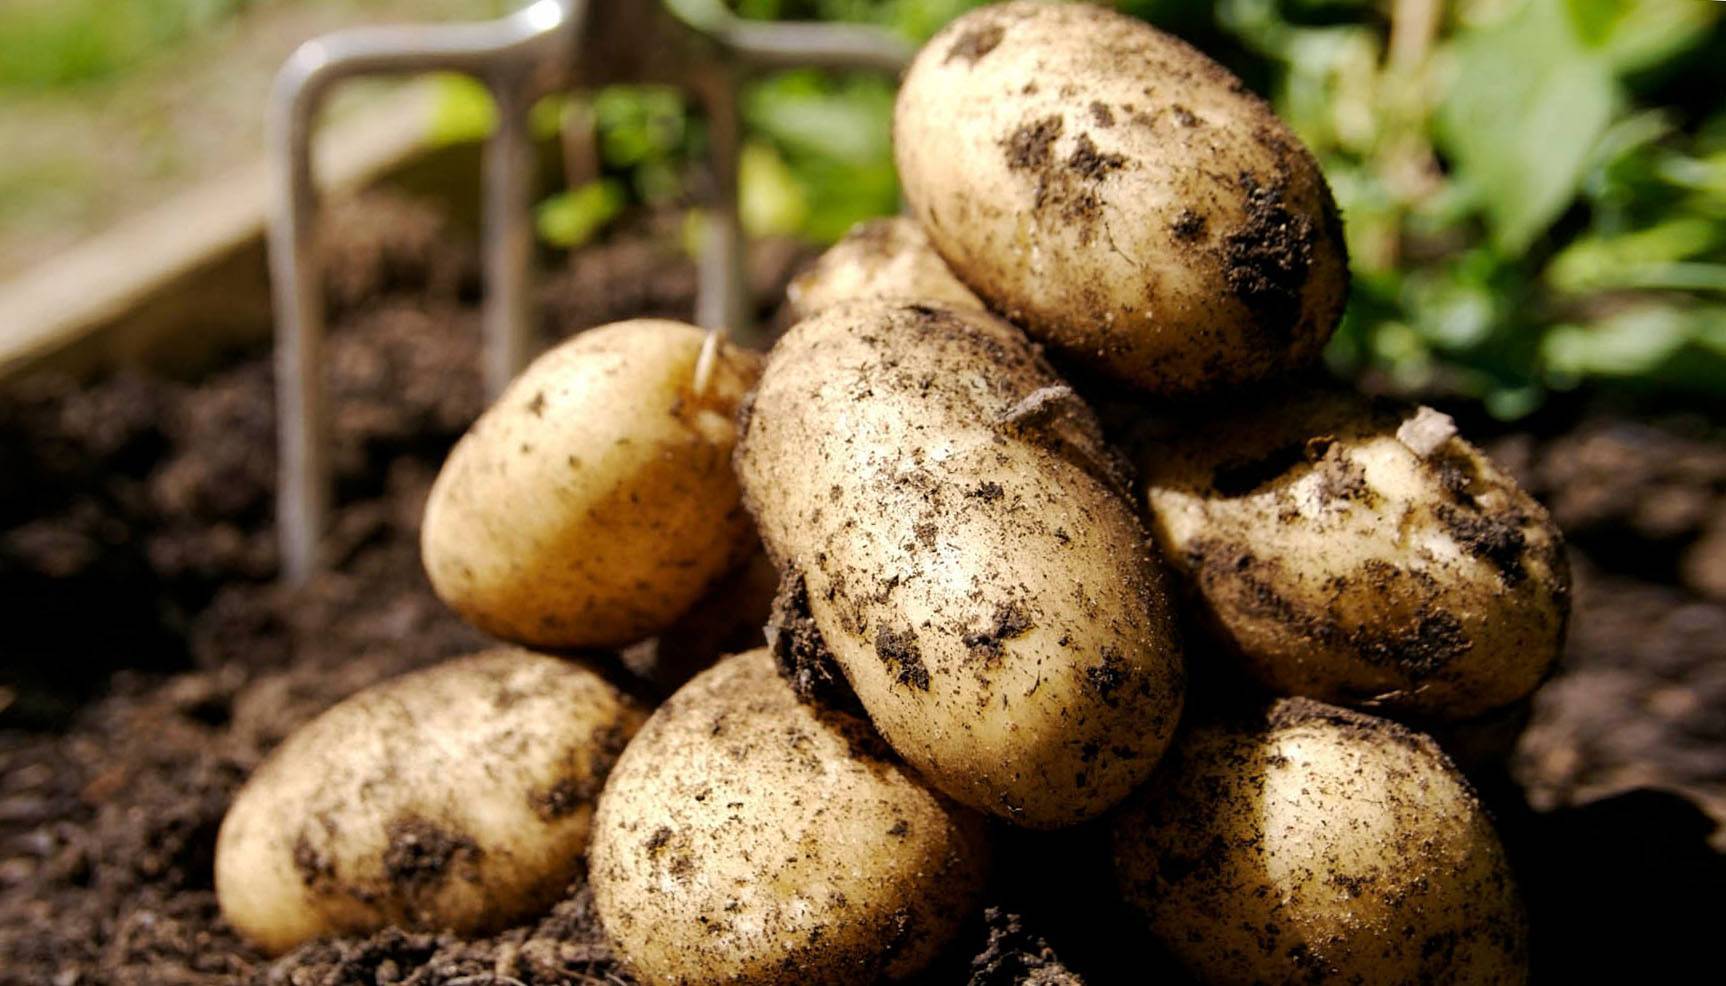 7 способов подготовки картофеля к посадке